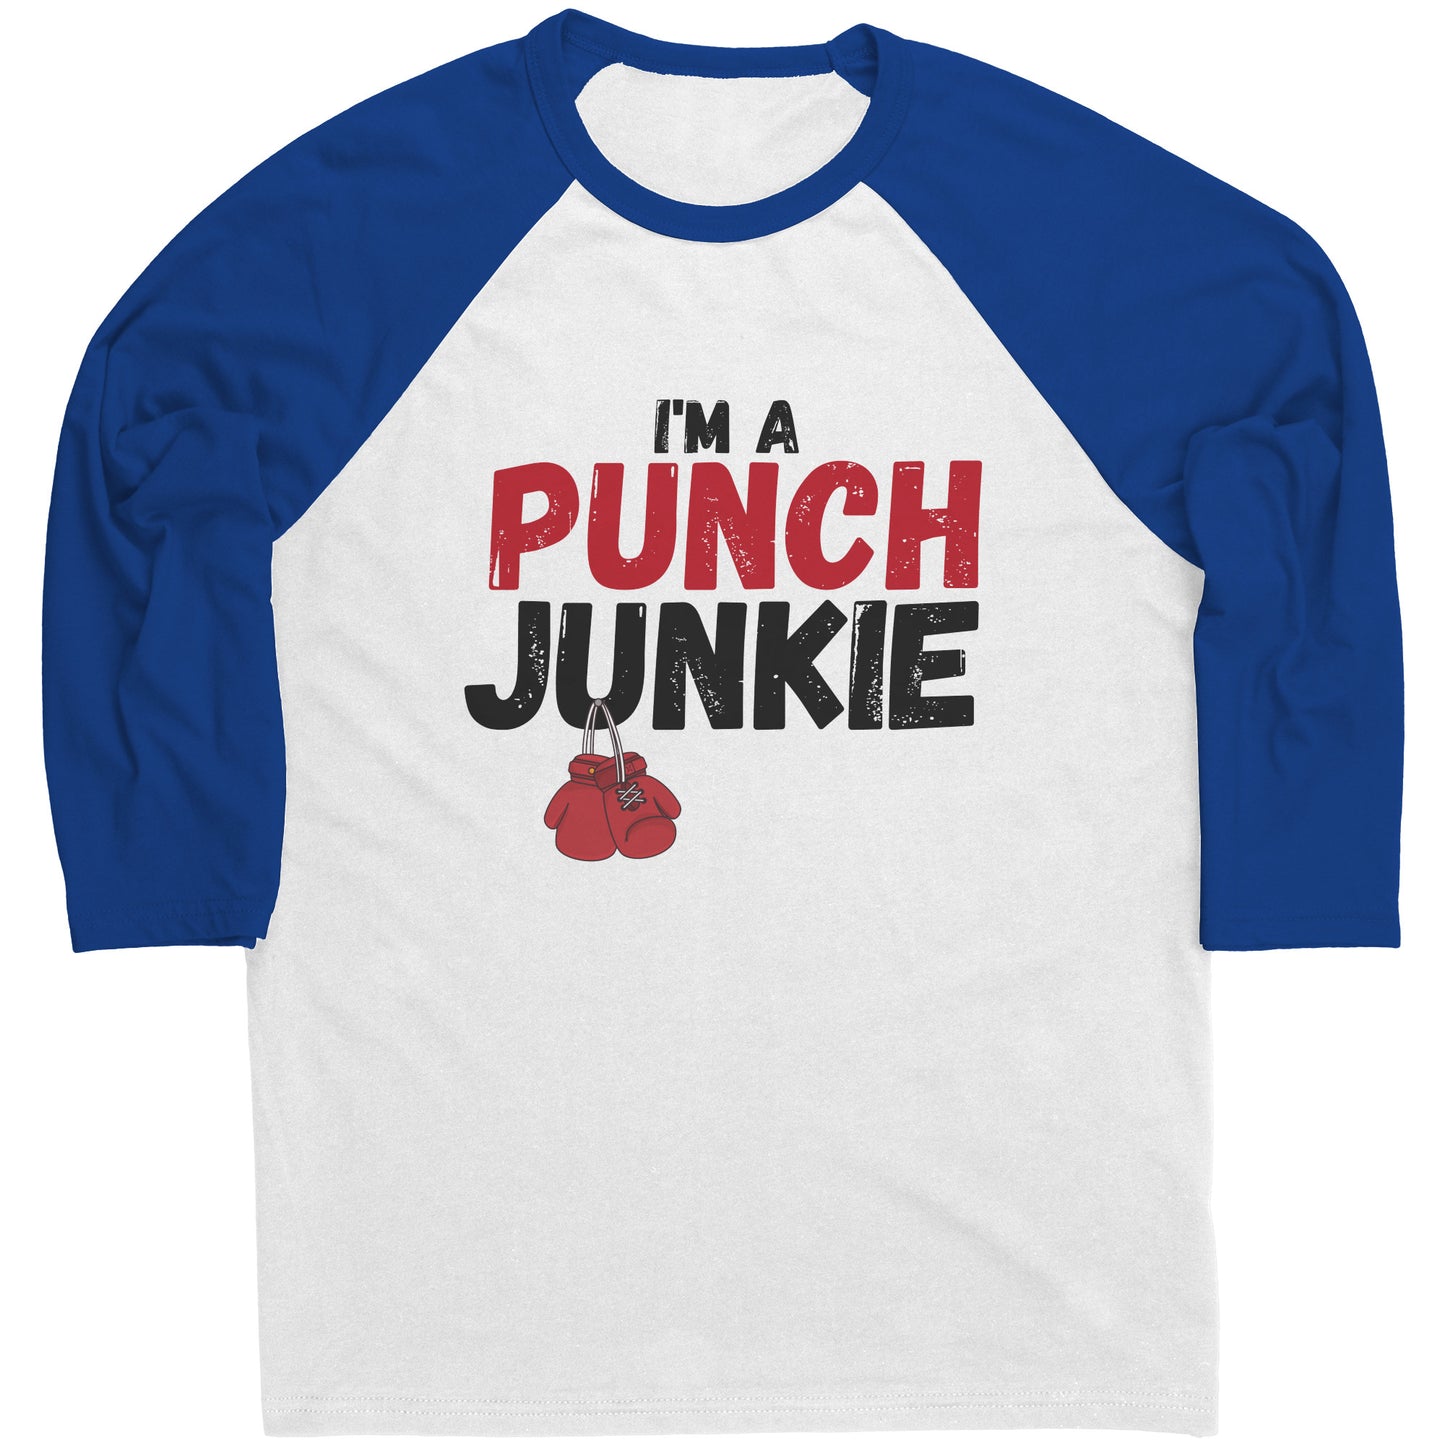 The "I'm a Punch Junkie" Raglan Shirt